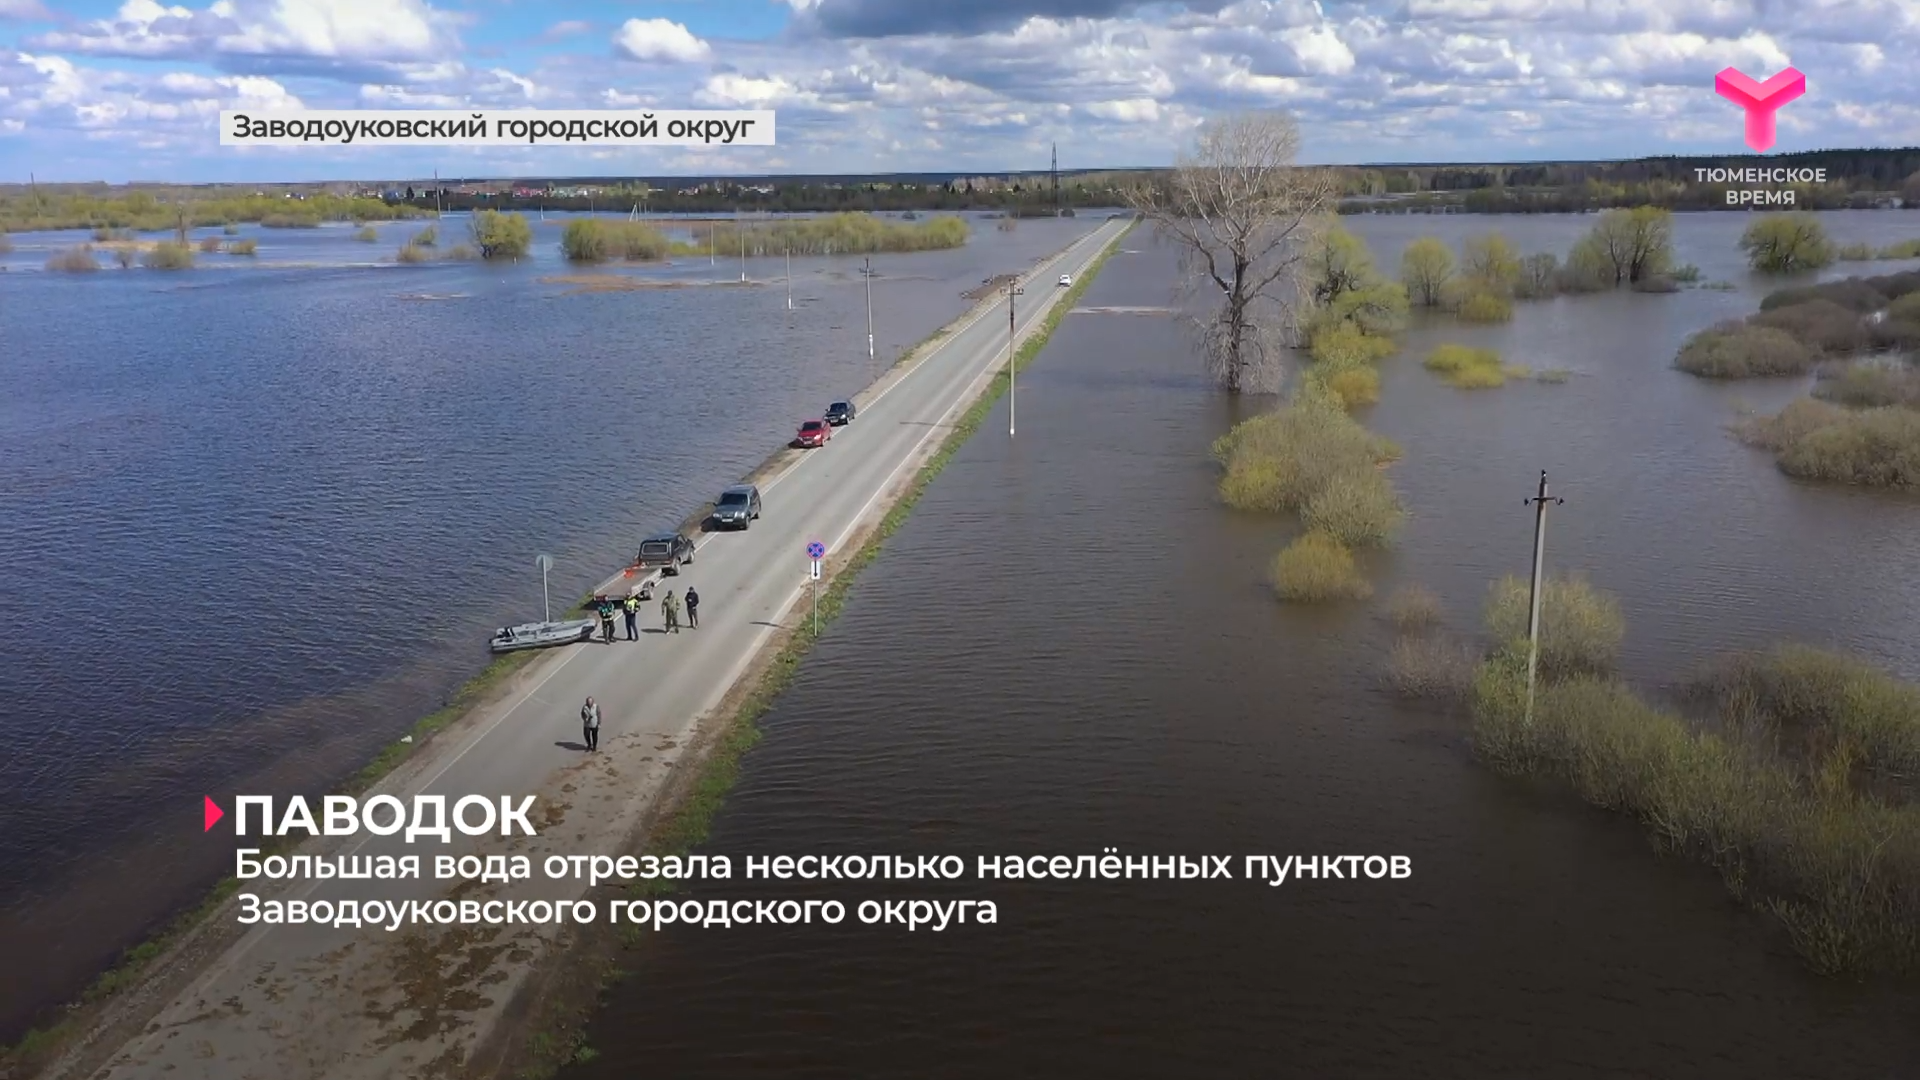 Большая вода отрезала несколько населённых пунктов Заводоуковского городского округа